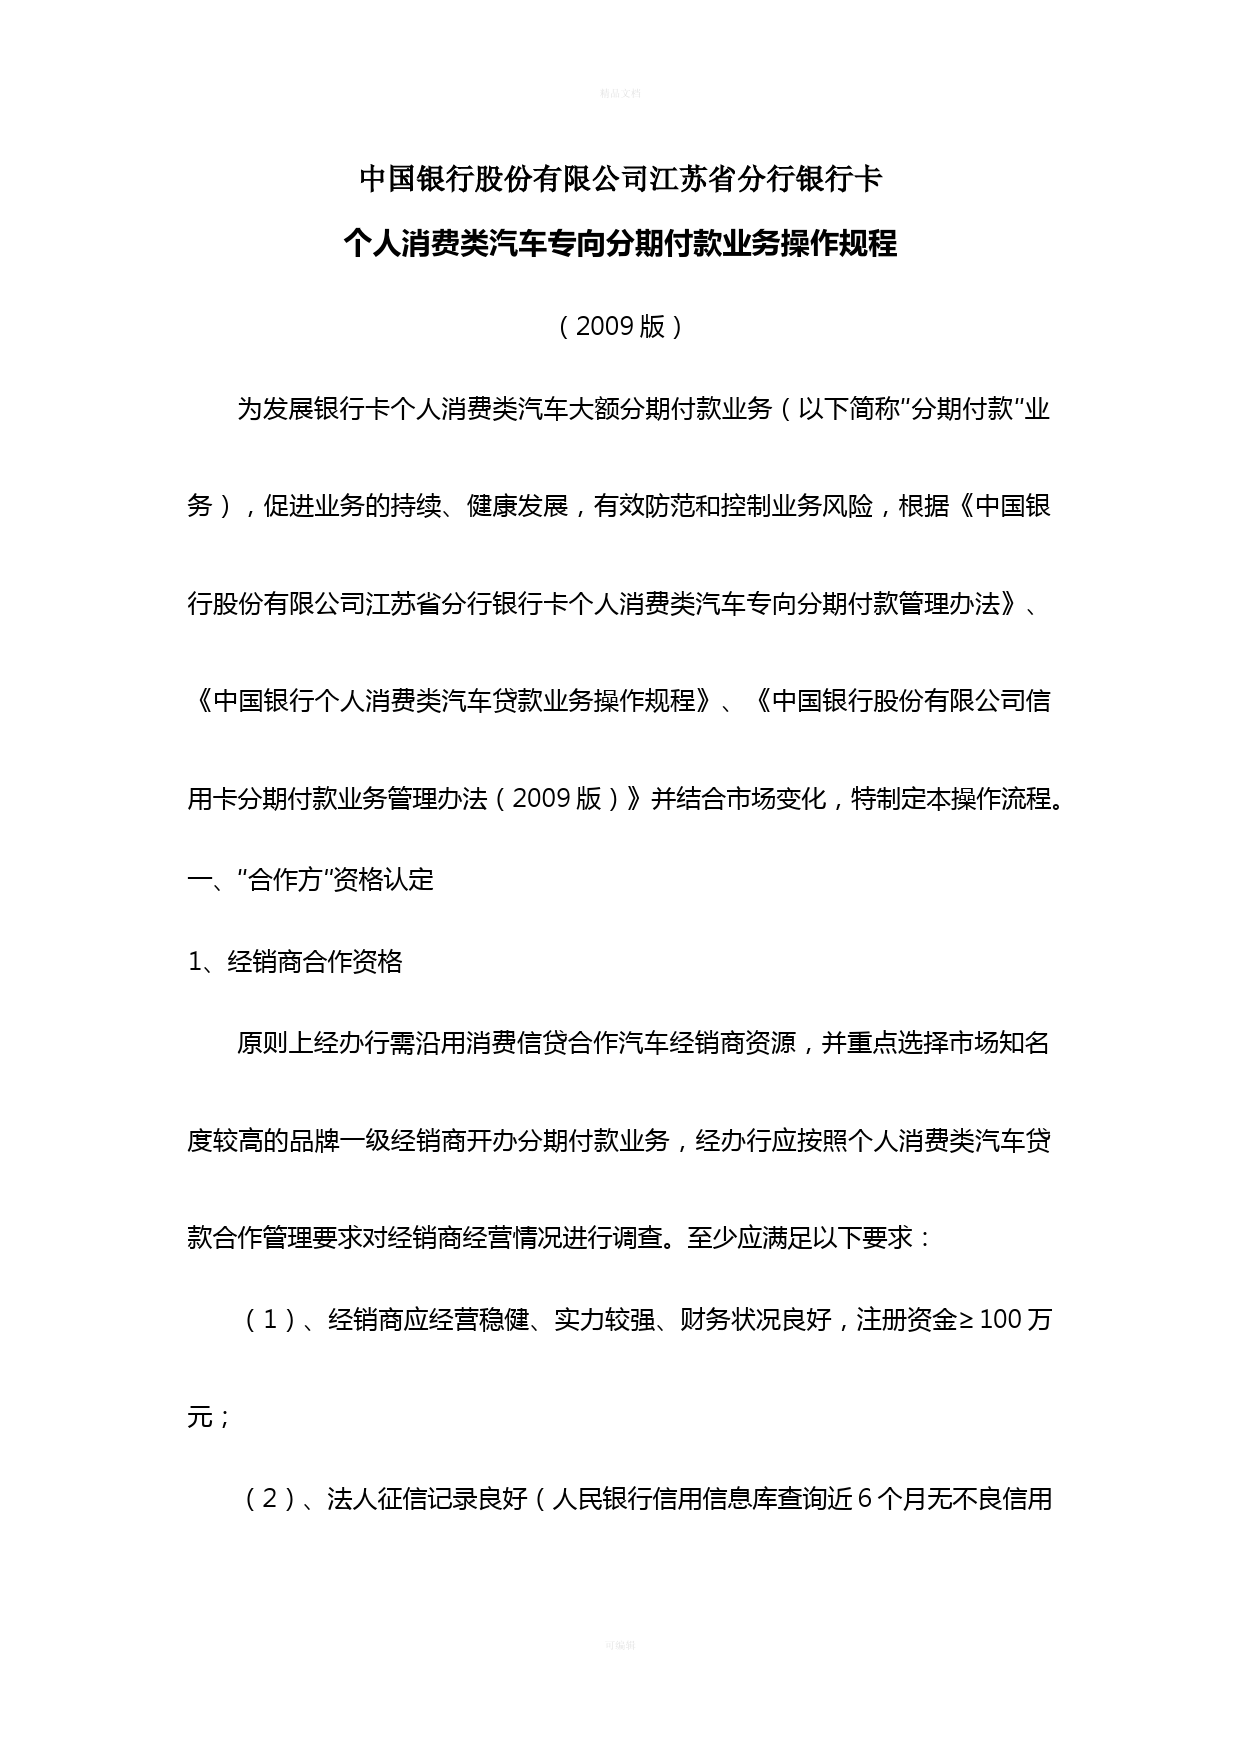 中国银行银行卡个人消费类汽车专向分期付款业务操作规程-(2009版)